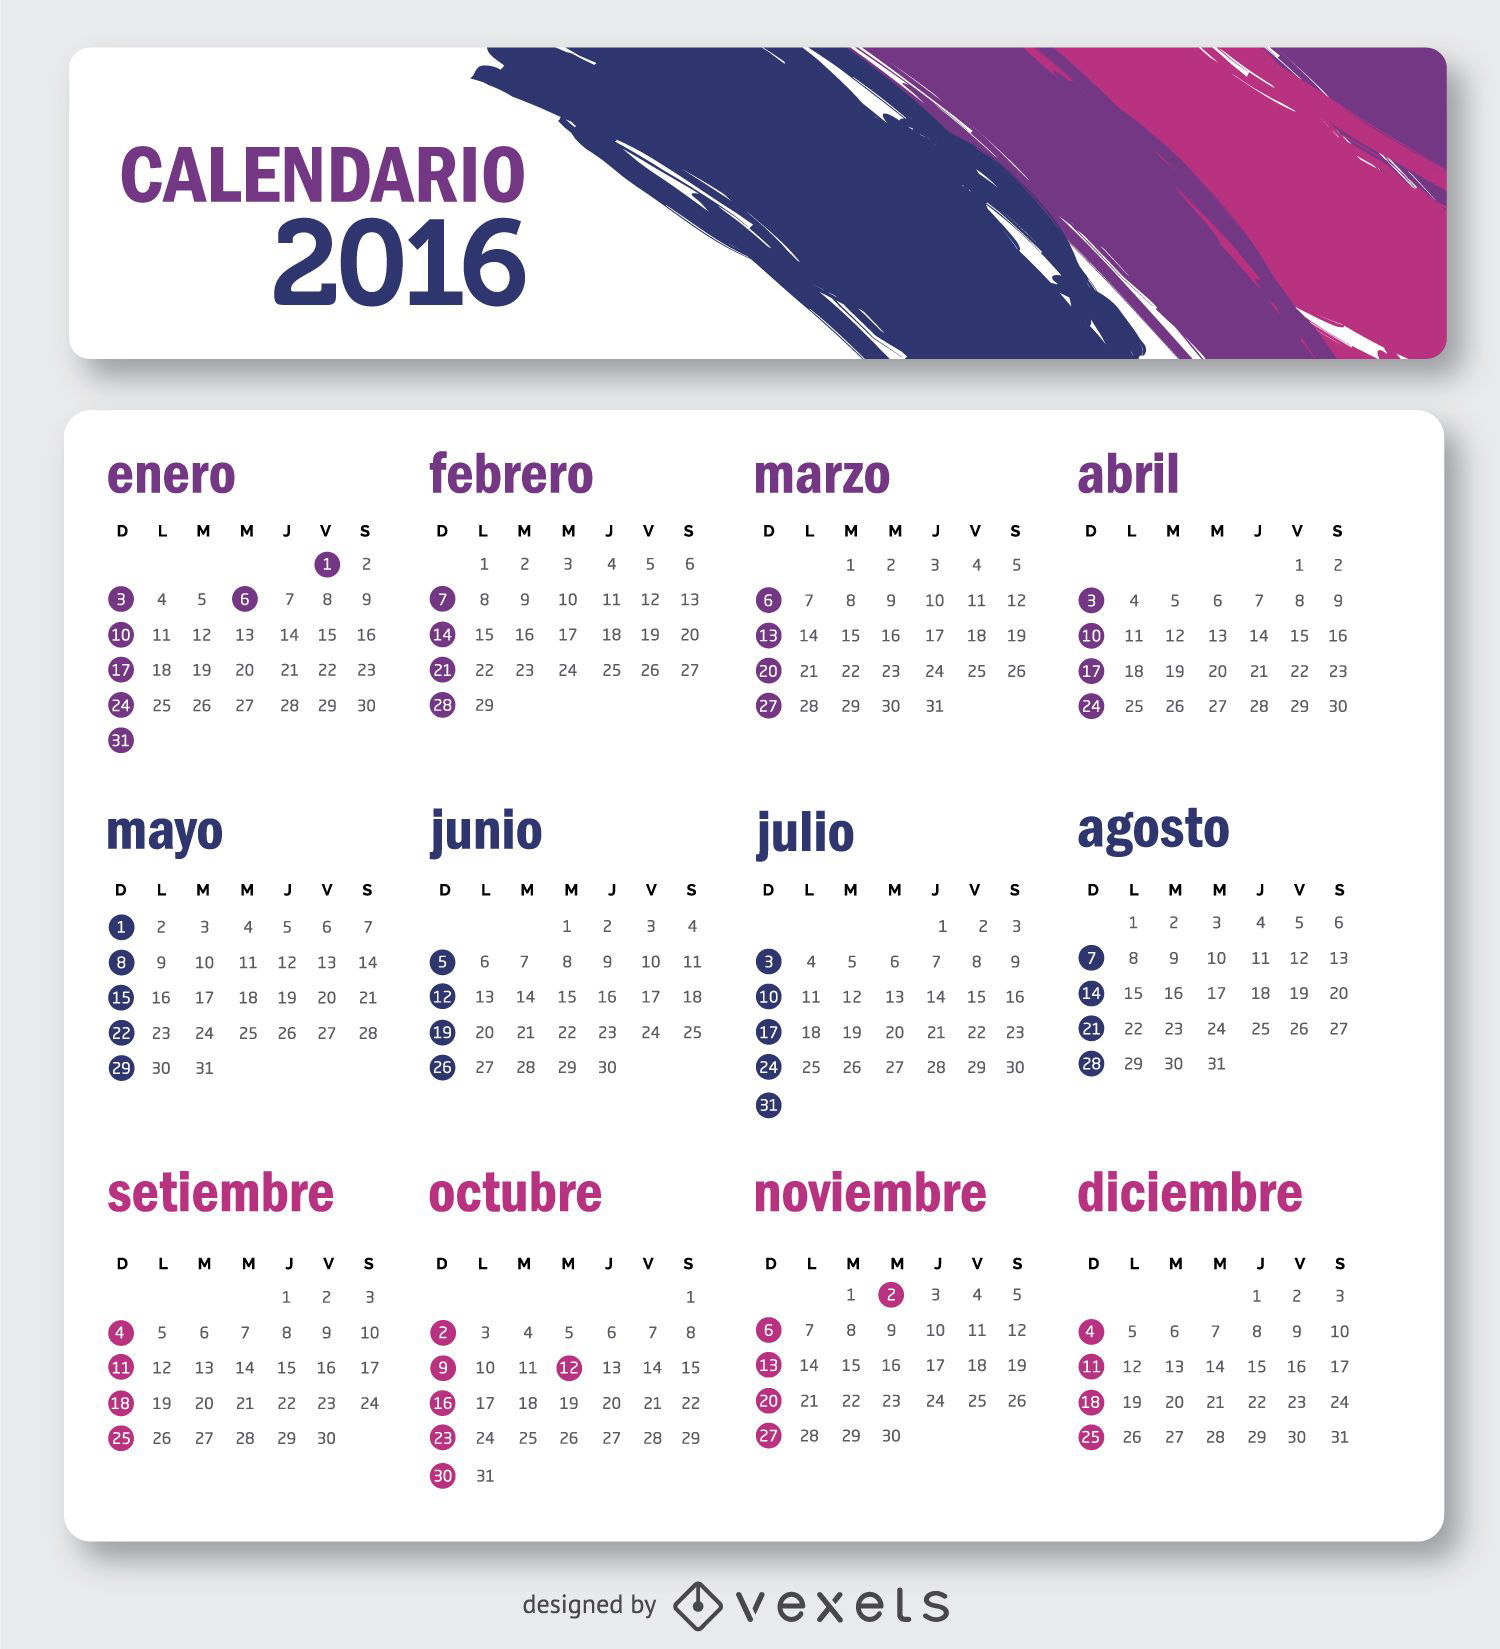 Calendario 2016 simple en espa?ol